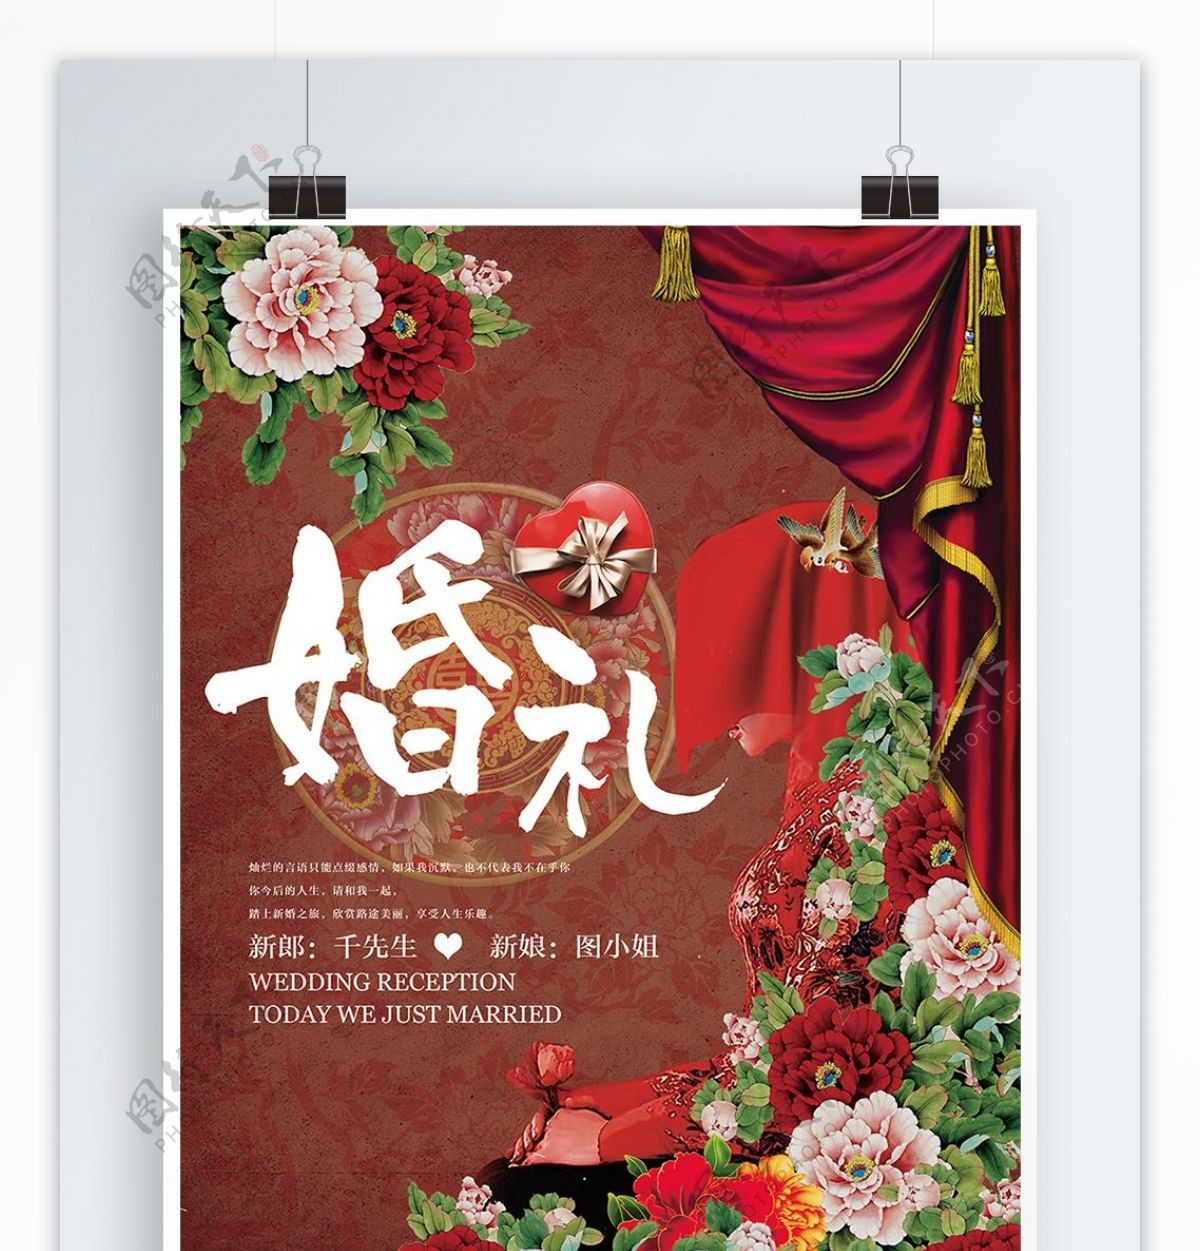 中国红喜庆婚礼结婚宣传海报展板